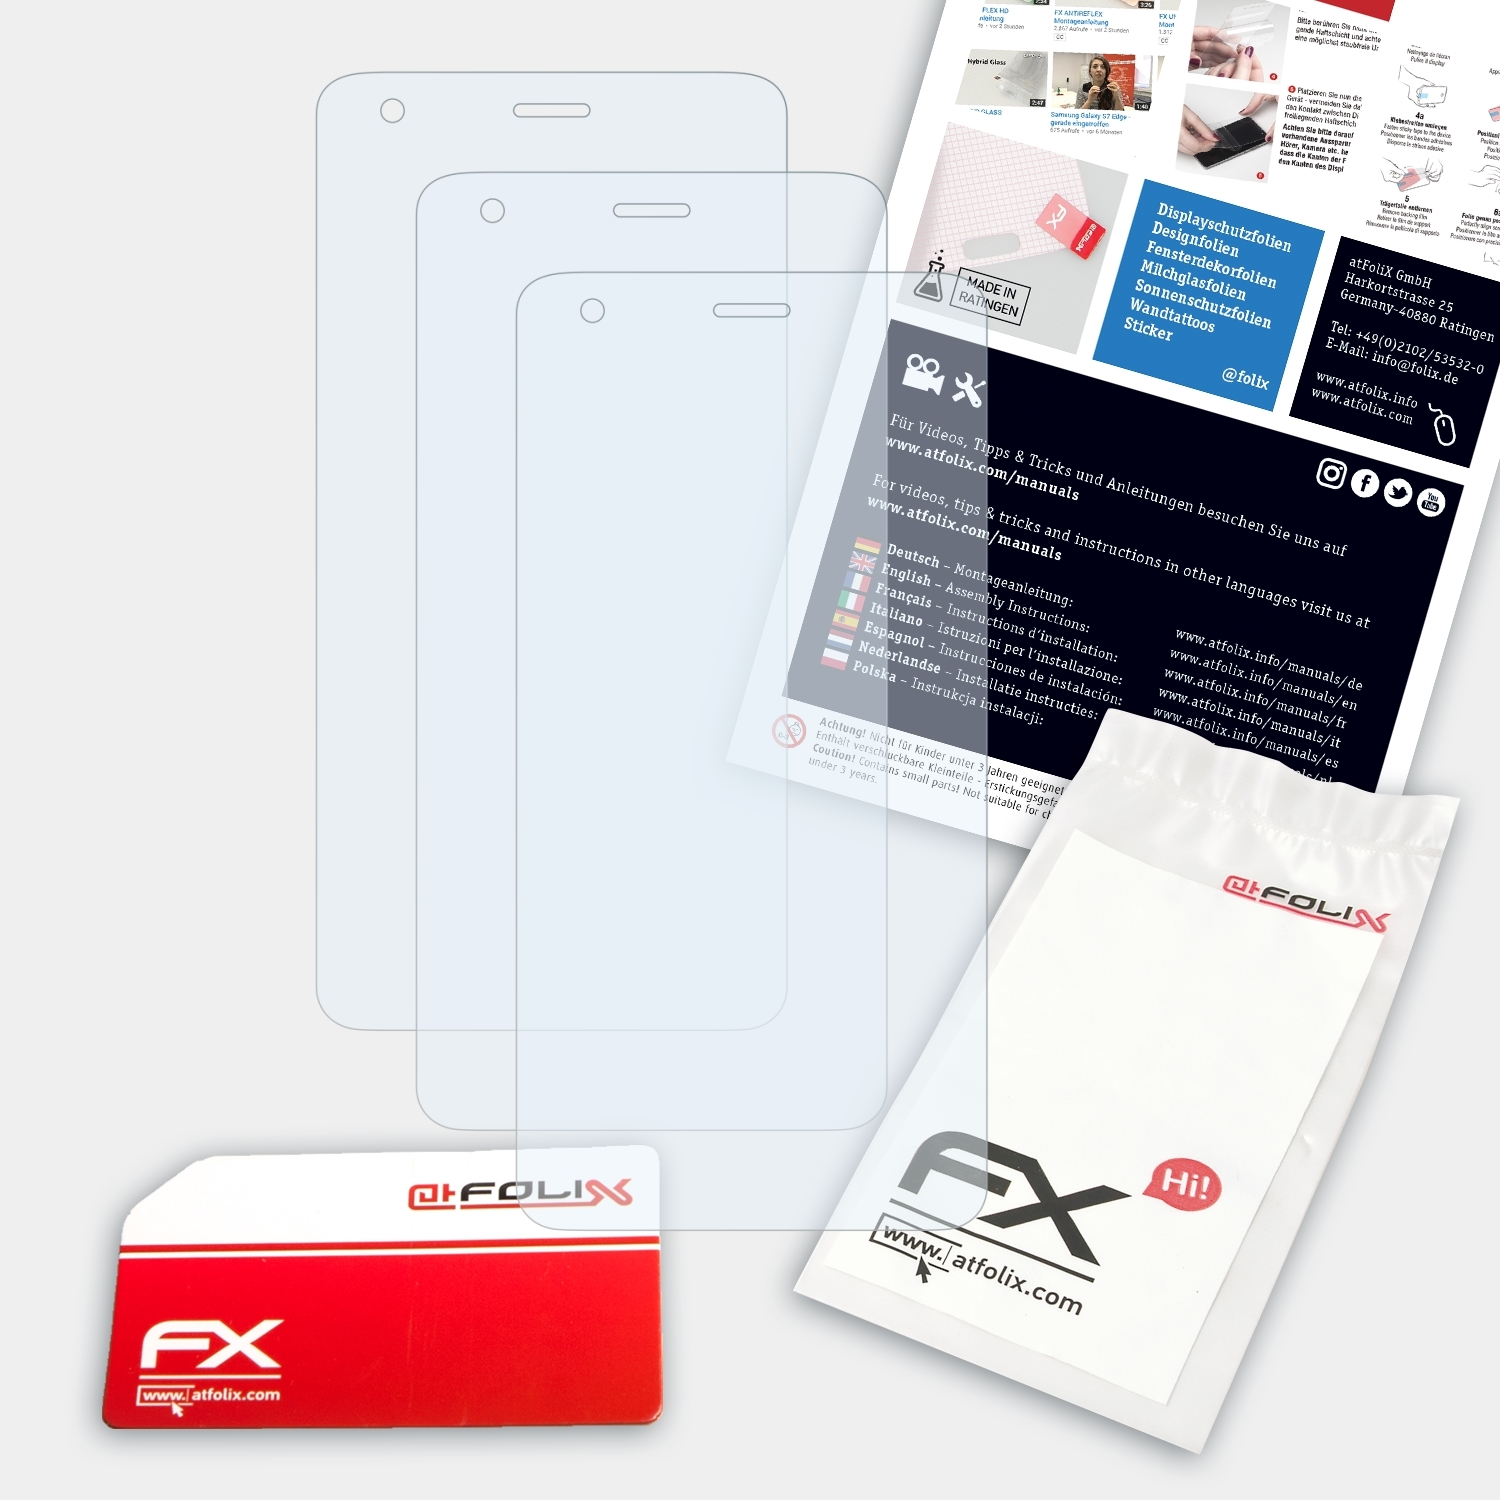 Displayschutz(für Xiaomi Redmi ATFOLIX 2) FX-Clear 3x